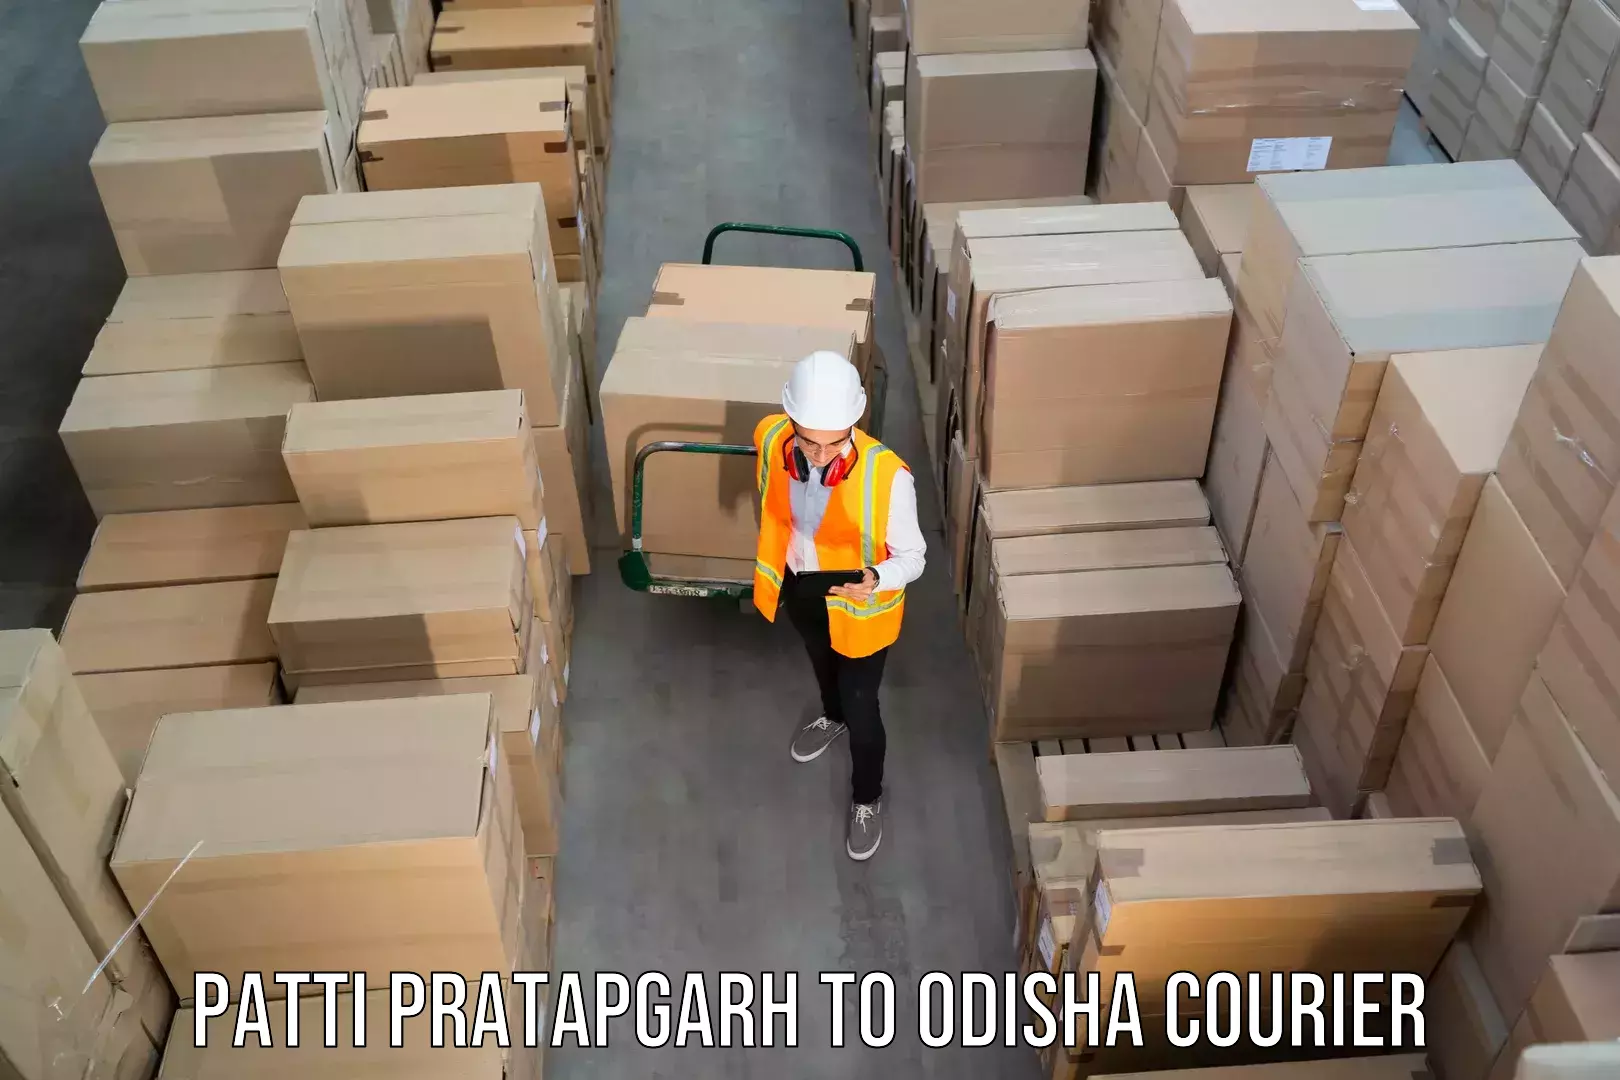 Seamless shipping service Patti Pratapgarh to Mahakalapada